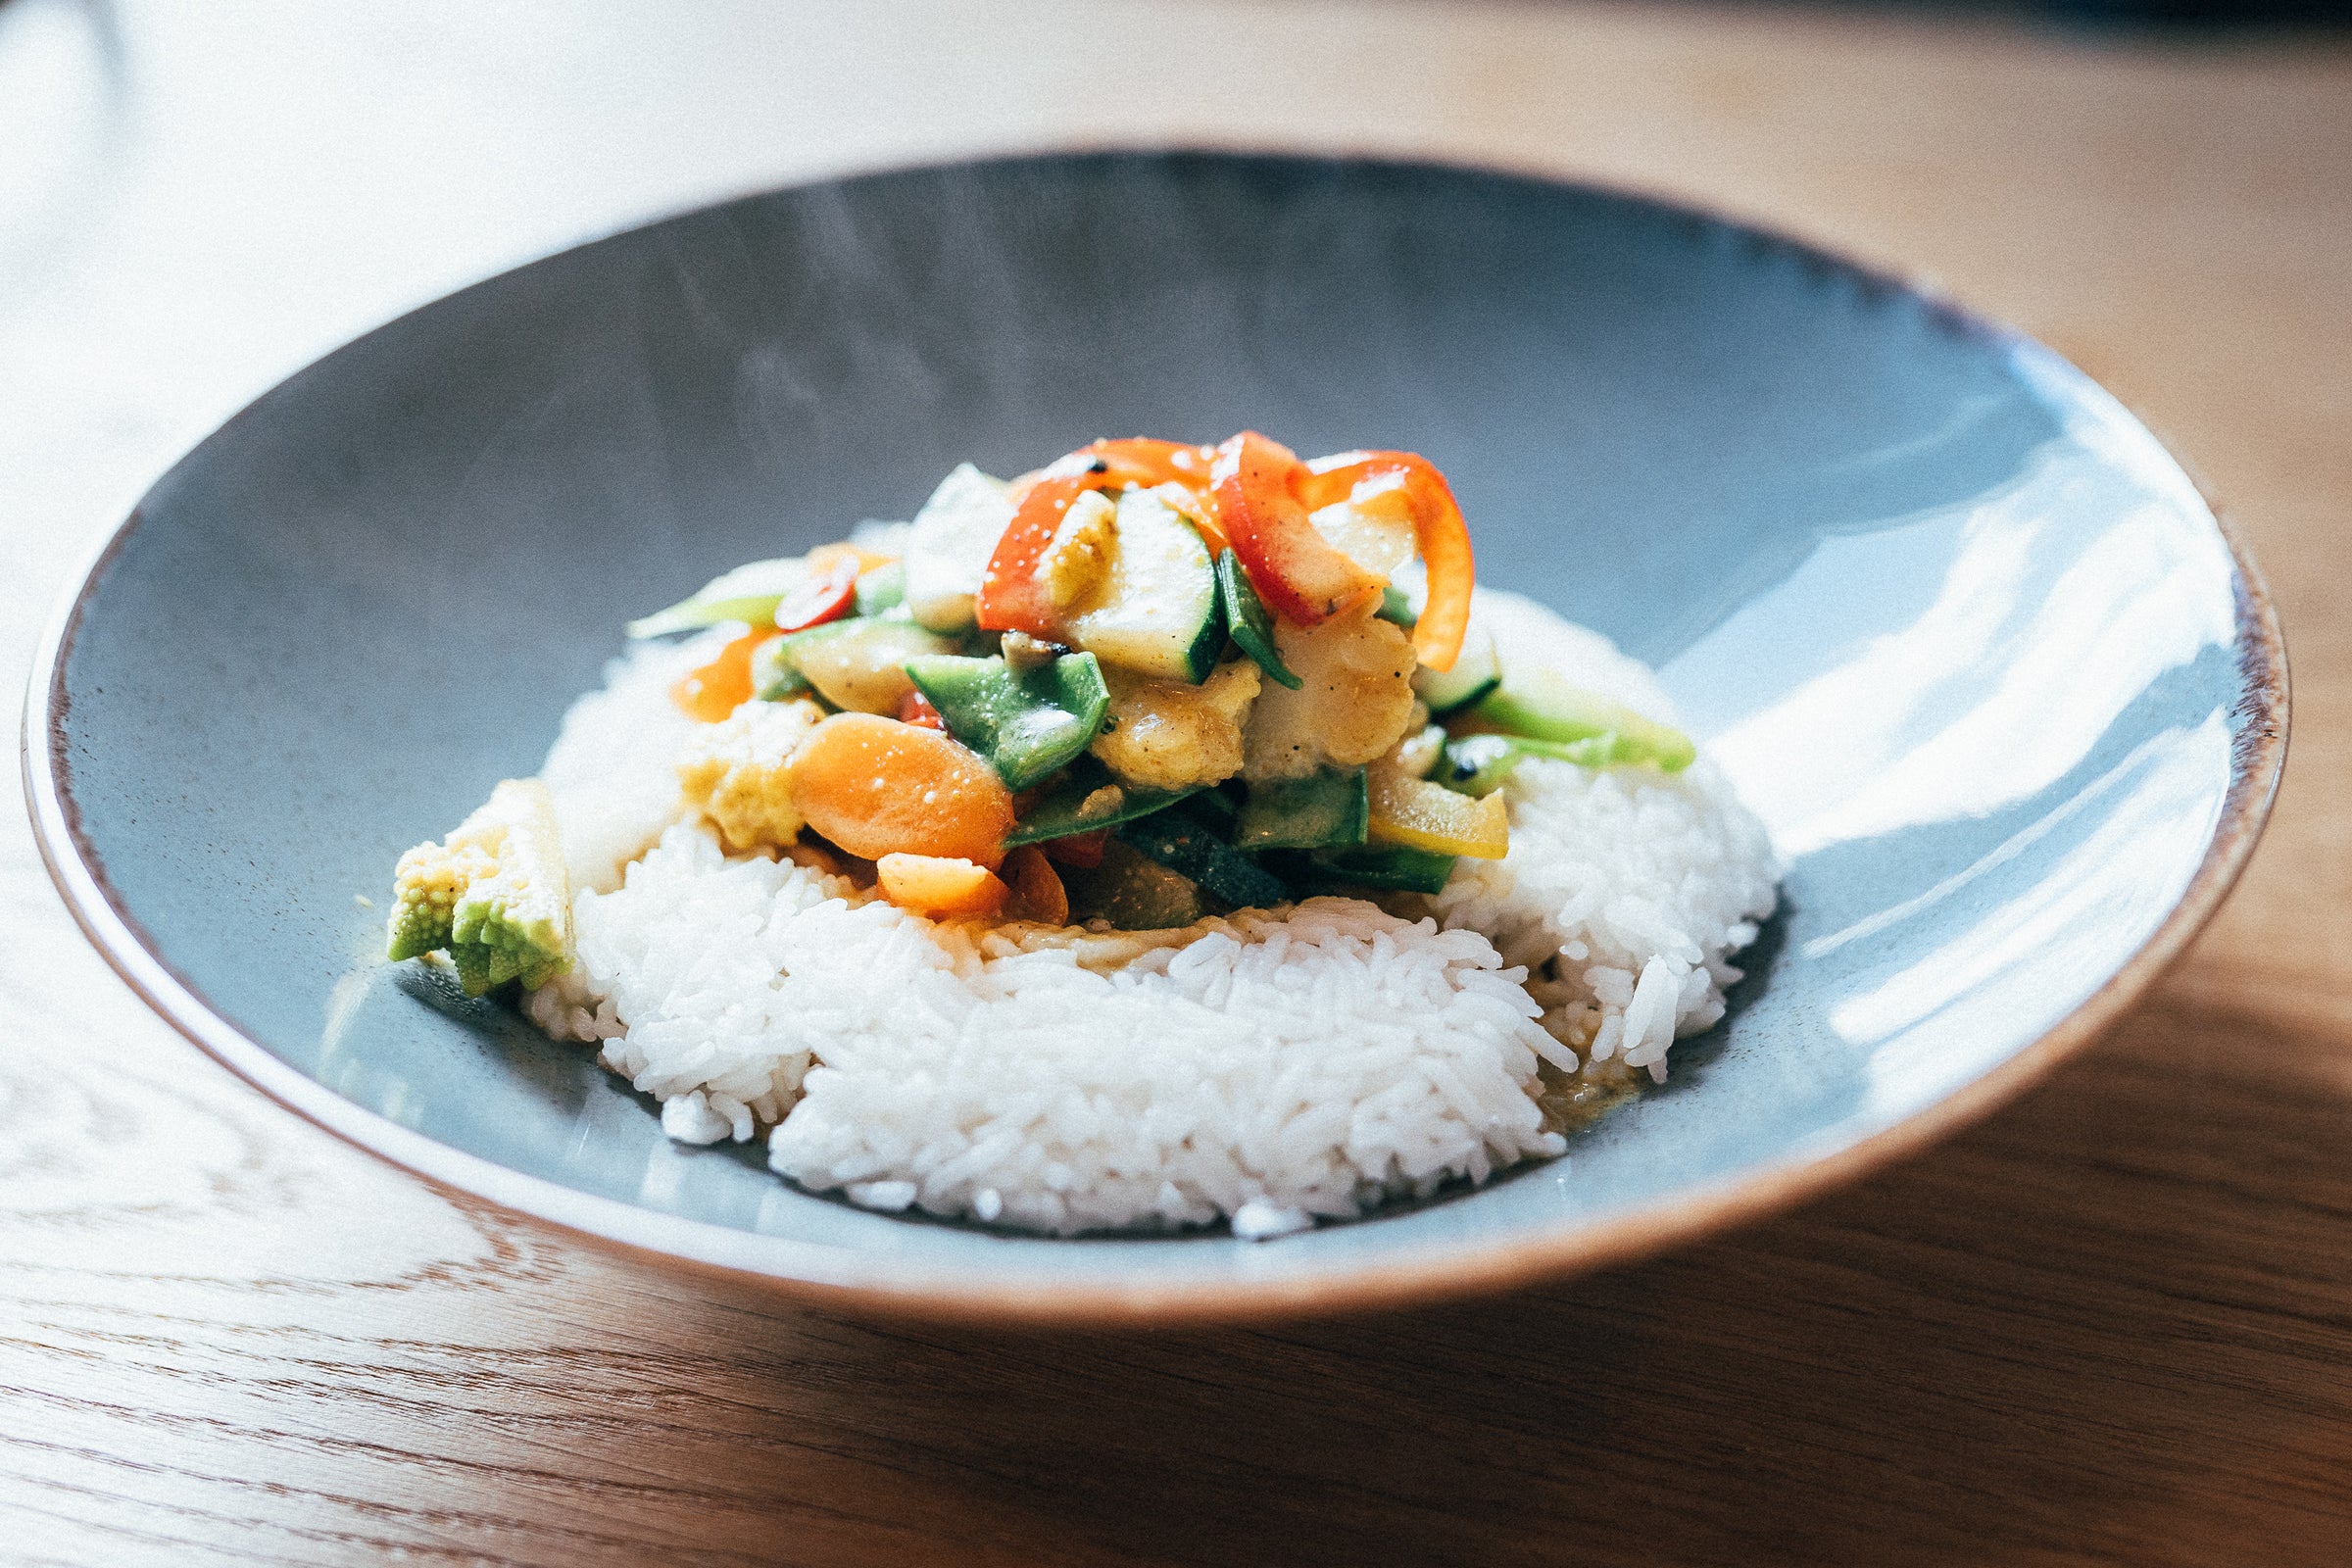 Deliziose verdure su riso servite in un bel piatto blu.